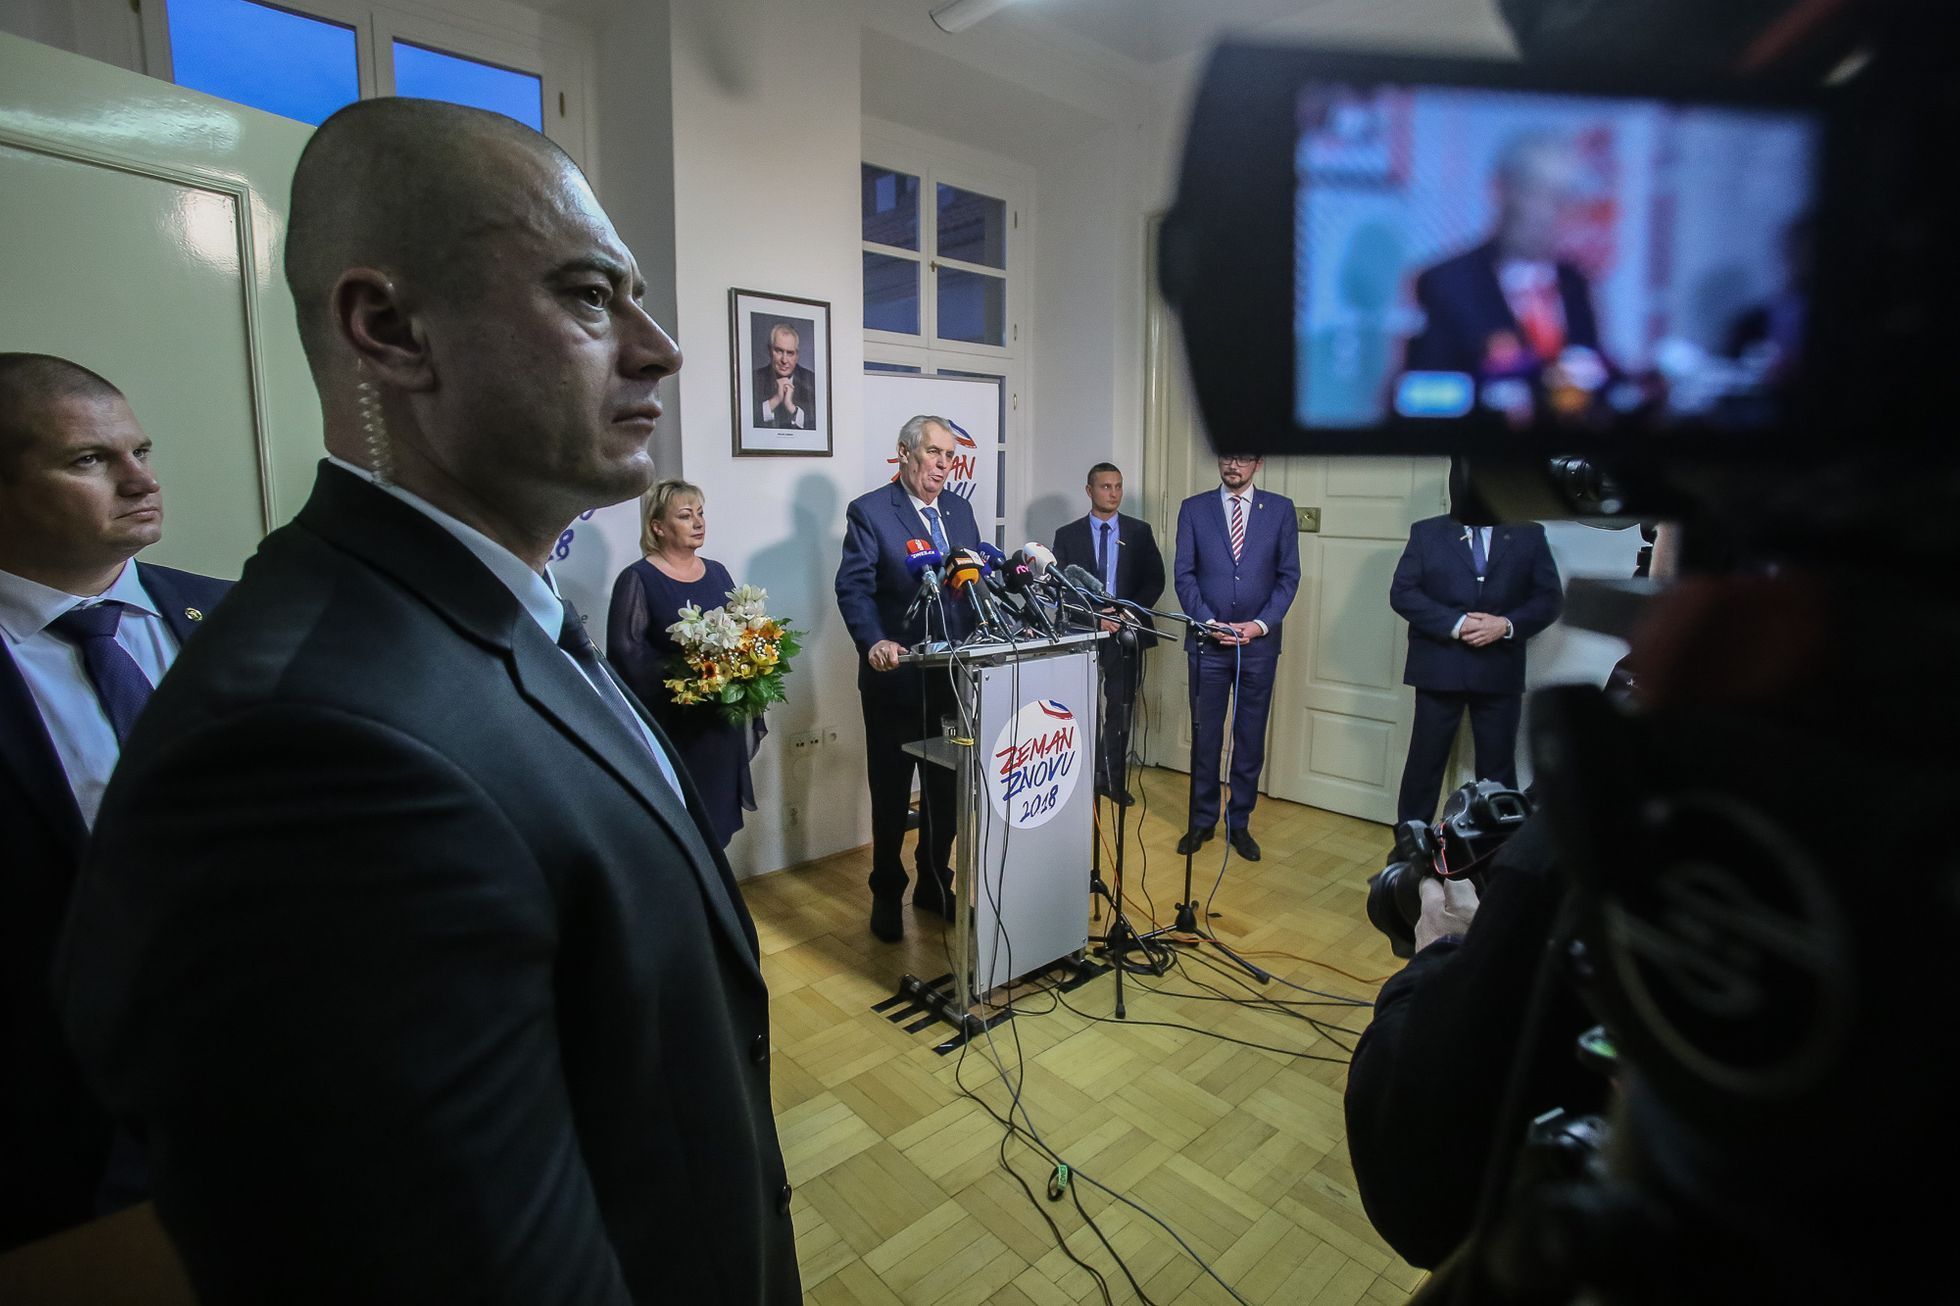 Miloš Zeman na TK po prvním kole prezidentských voleb 2018